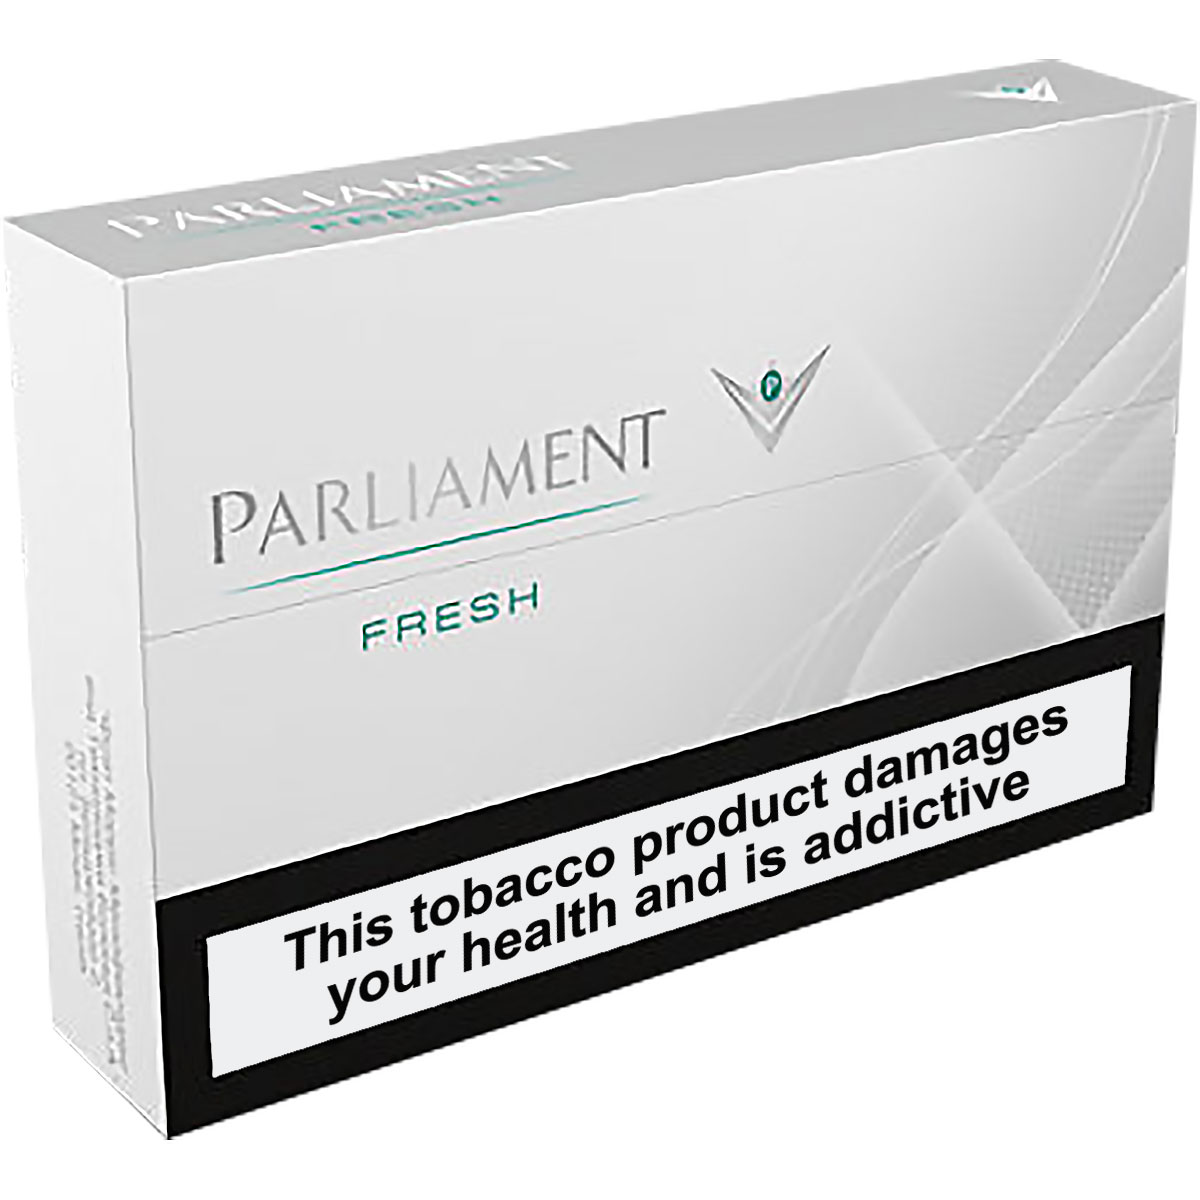 Parliament - Fresh (1 pack)